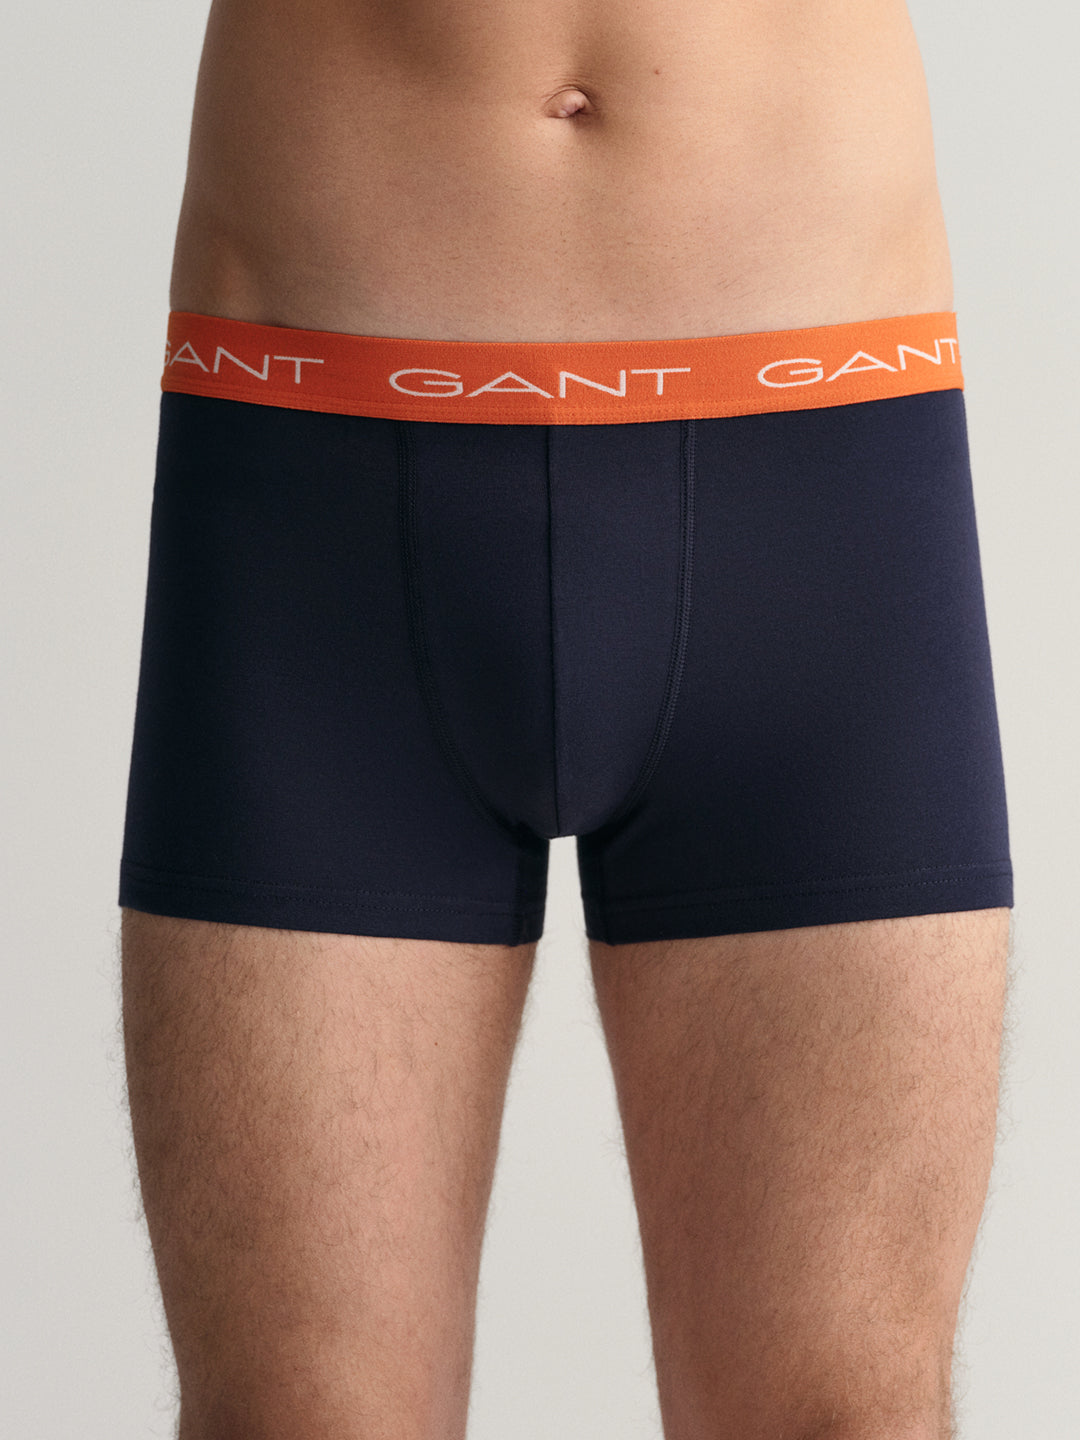 Gant Men Pack Of 3 Brand Logo Printed Trunks 8905241187249